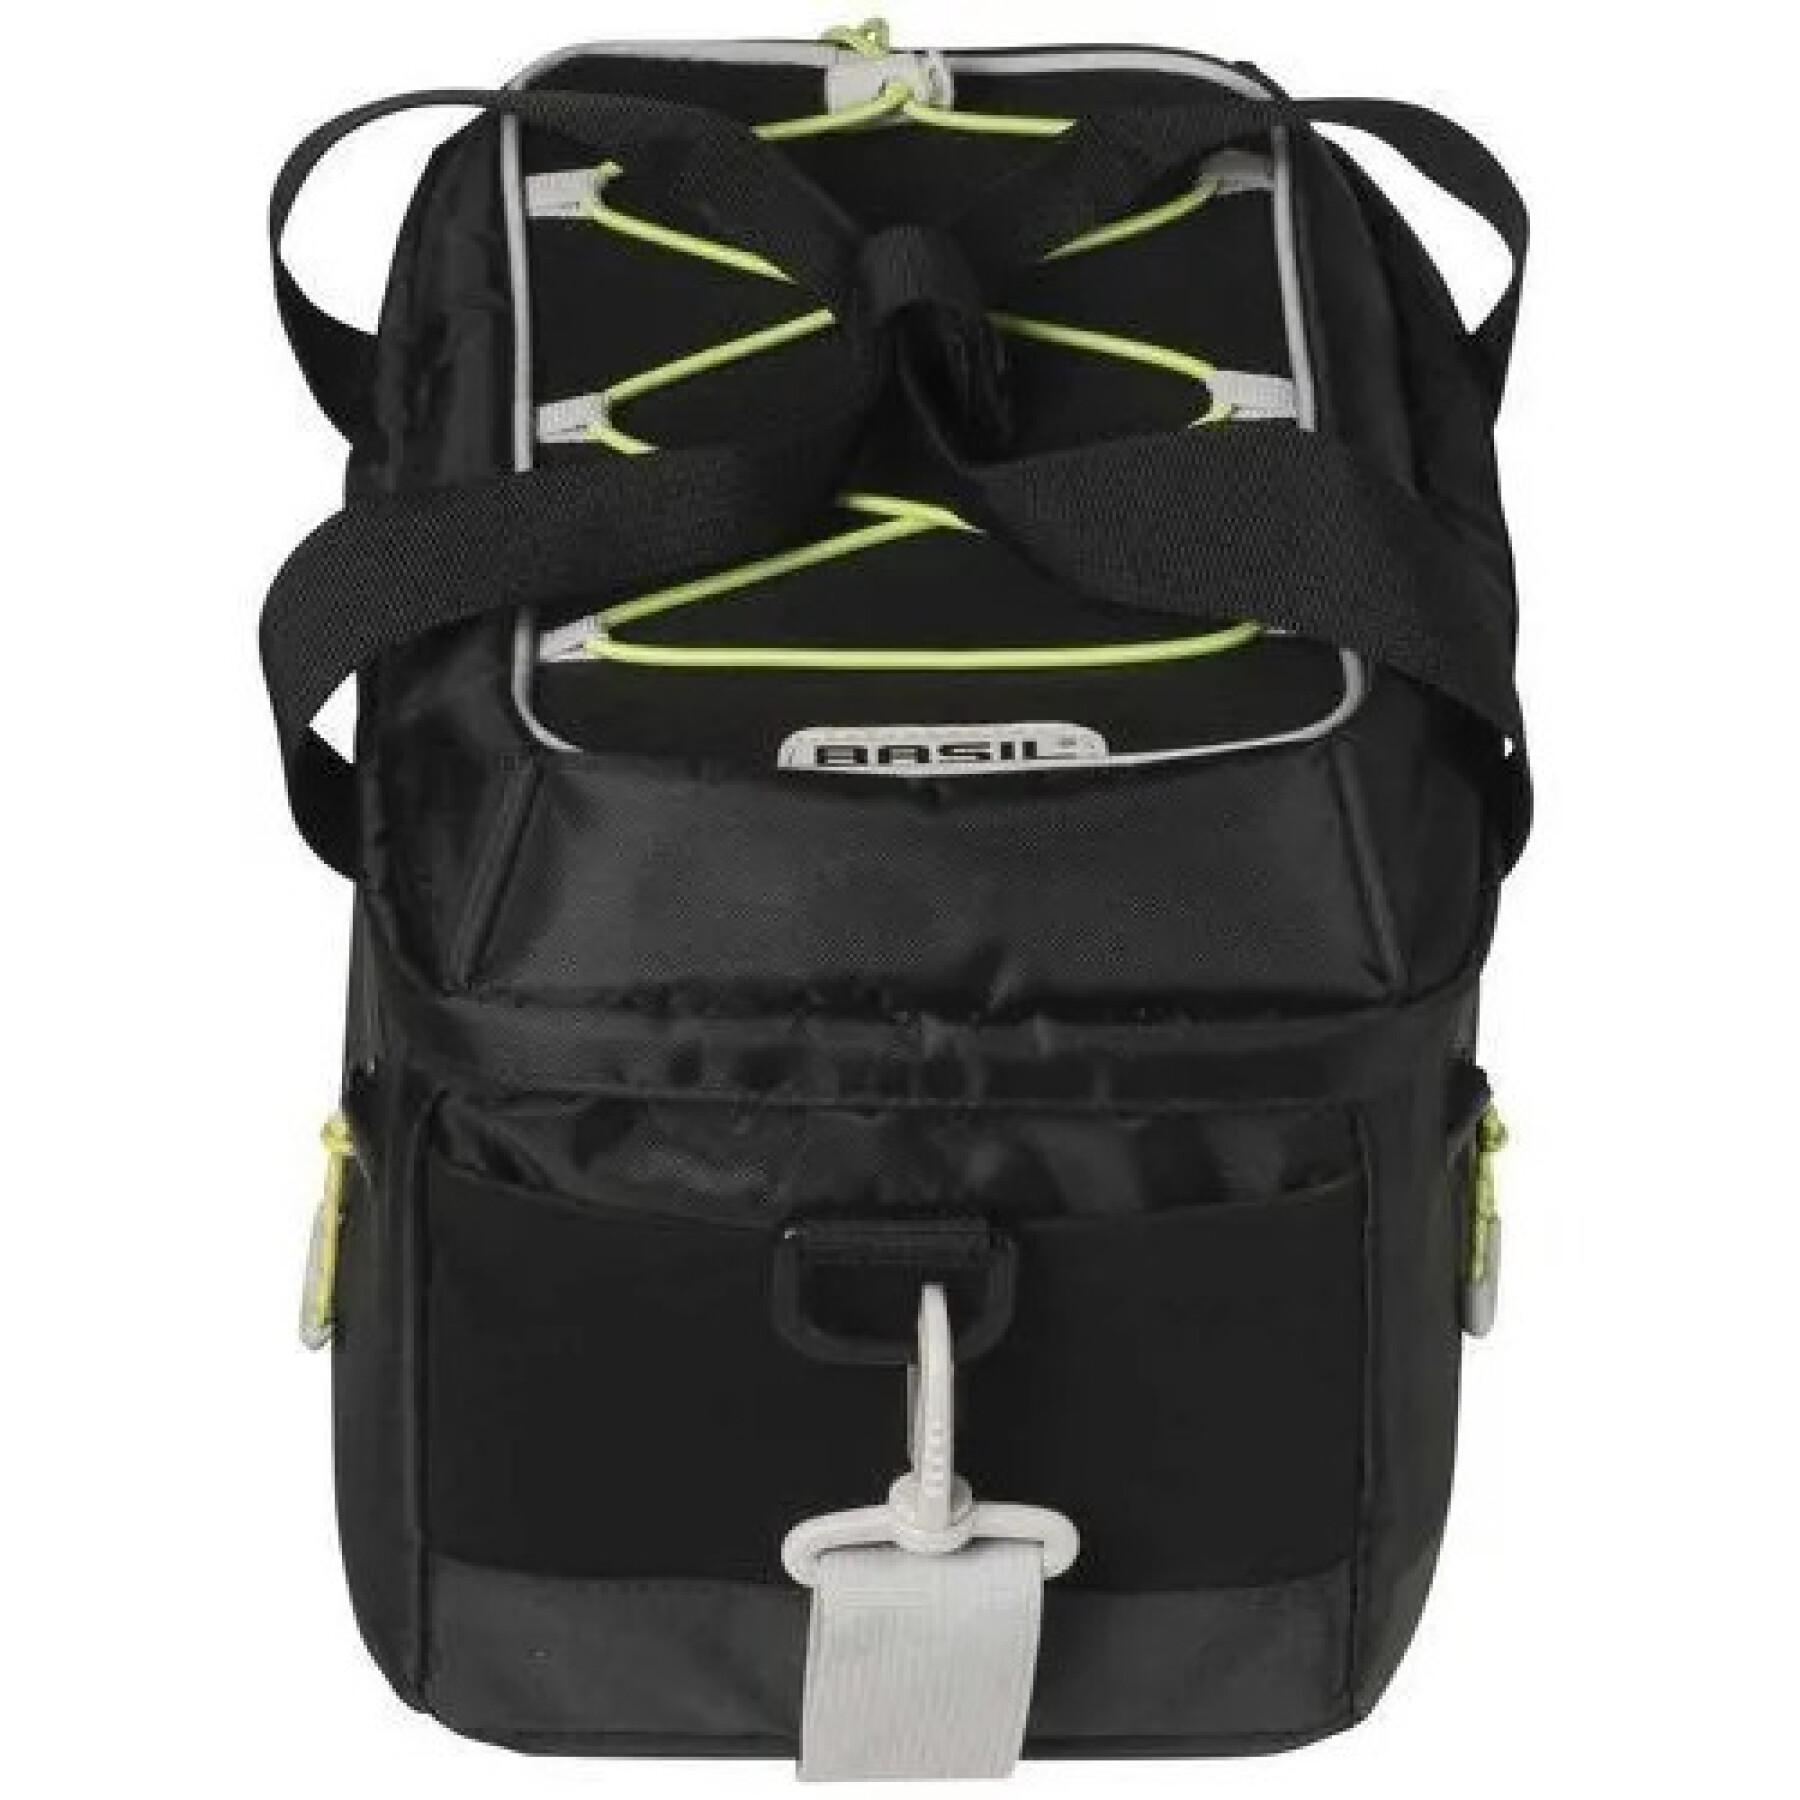 Waterproof backpack/shoulder bag Basil miles trunkbag 7L